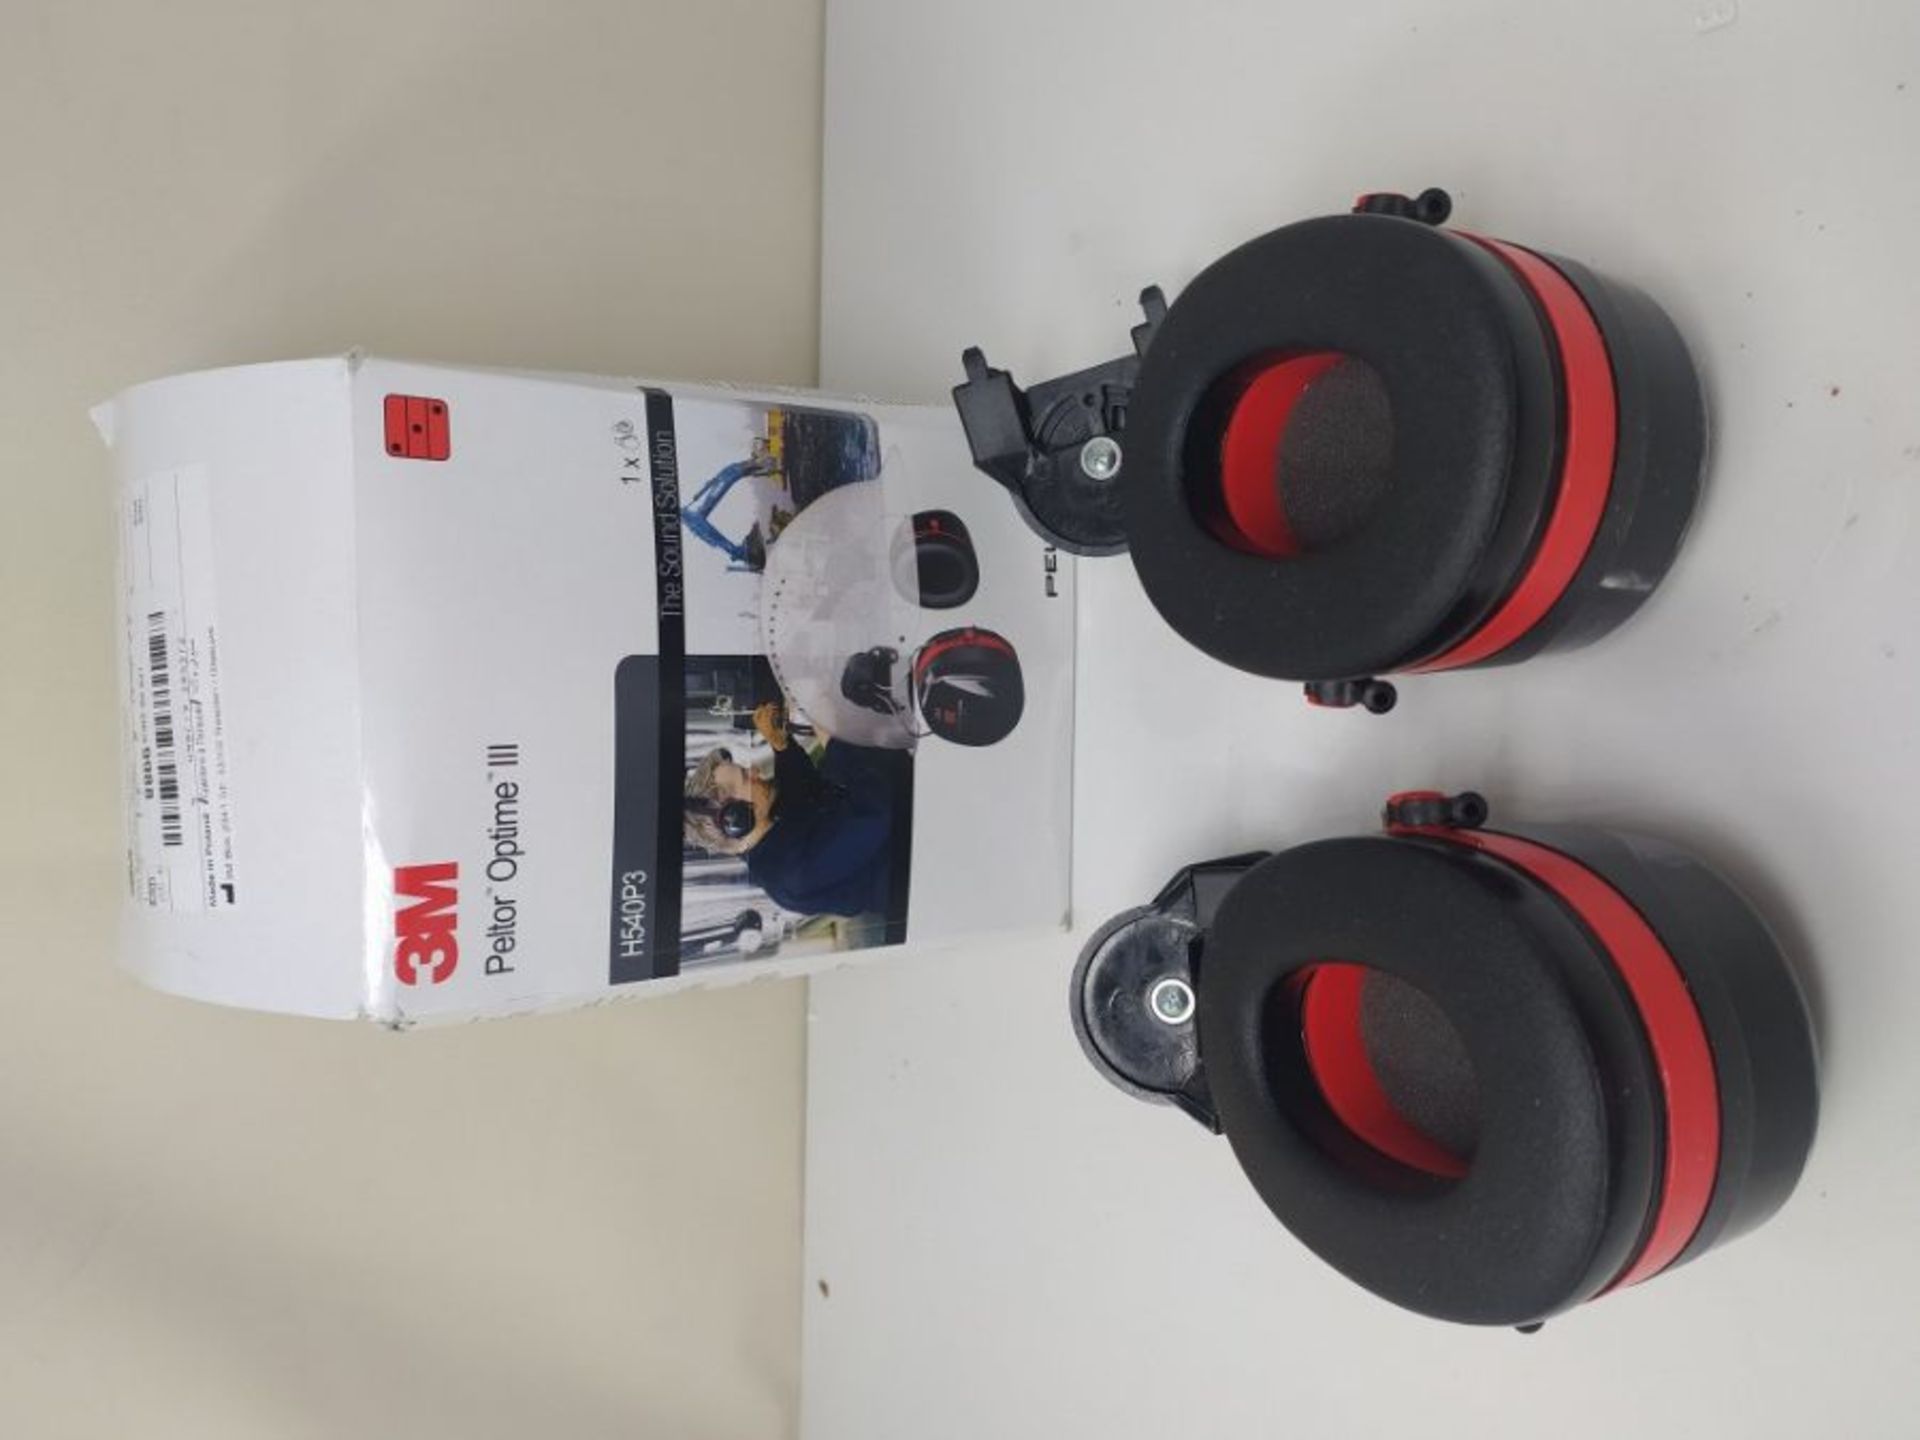 3M PELTOR Optime III Earmuffs, 34 dB, Black/Red, Helmet Mounted, H540P3EA-413-SV - Image 2 of 2